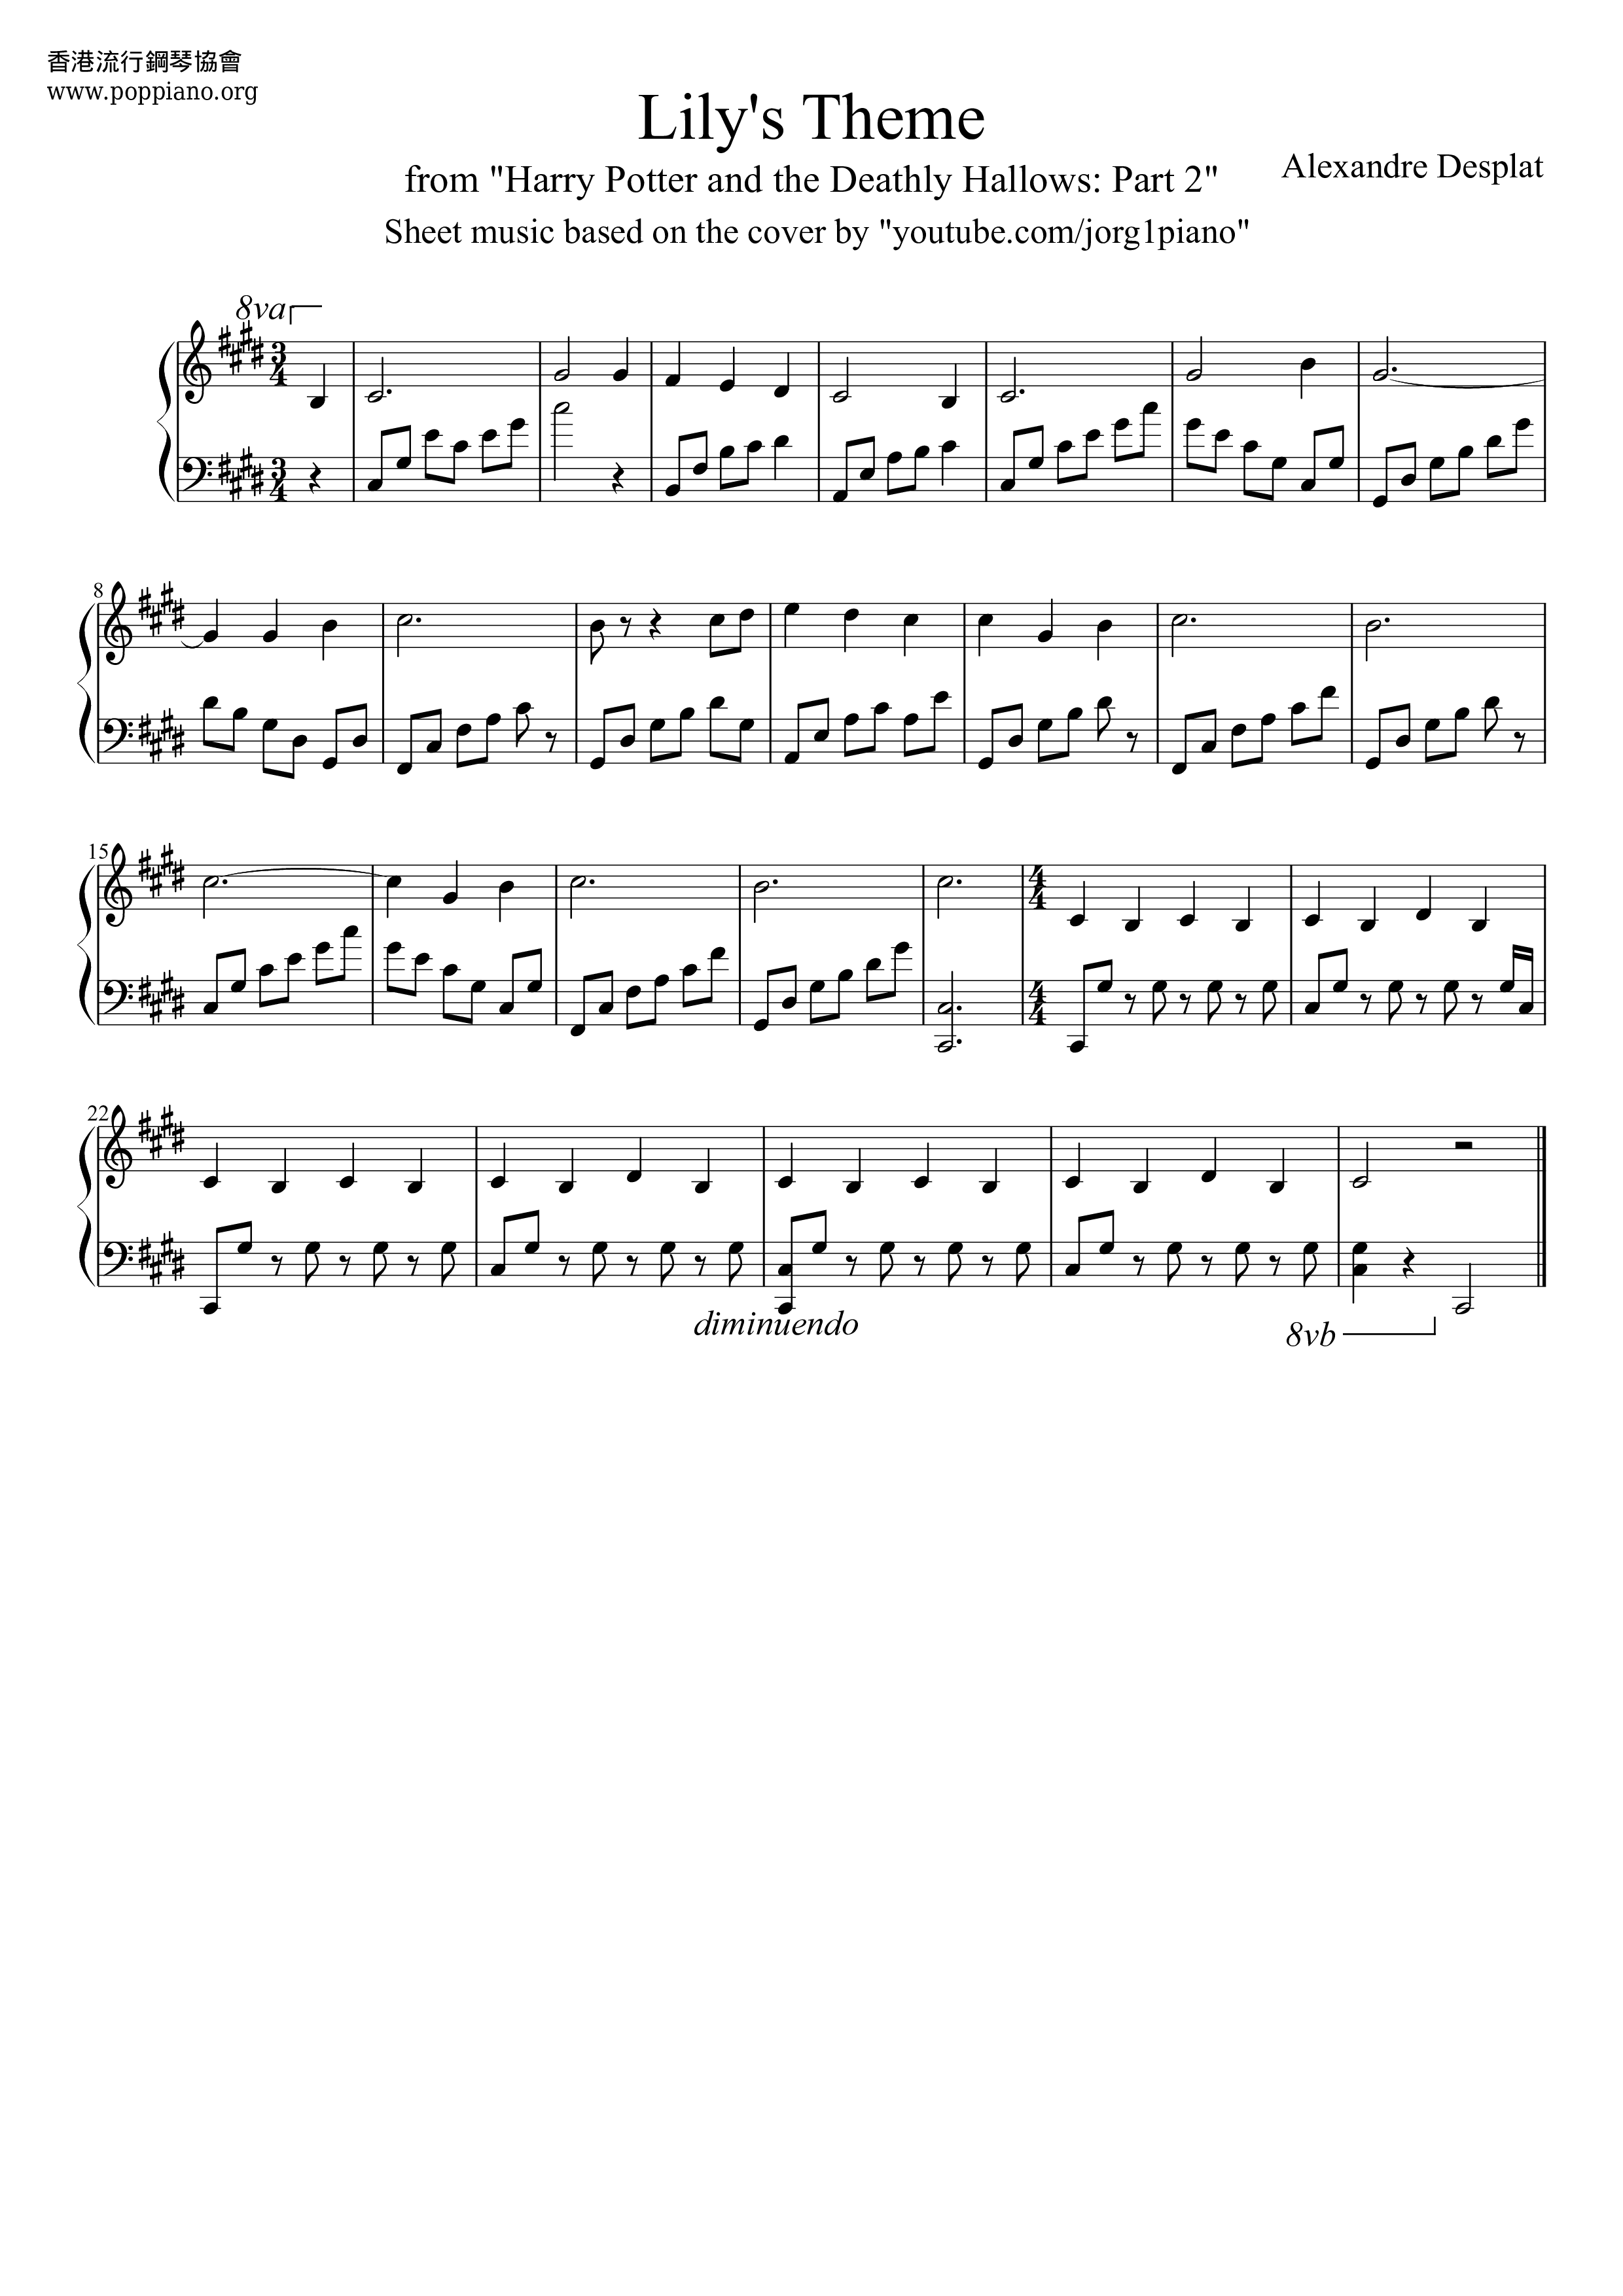 Lilys Theme Score